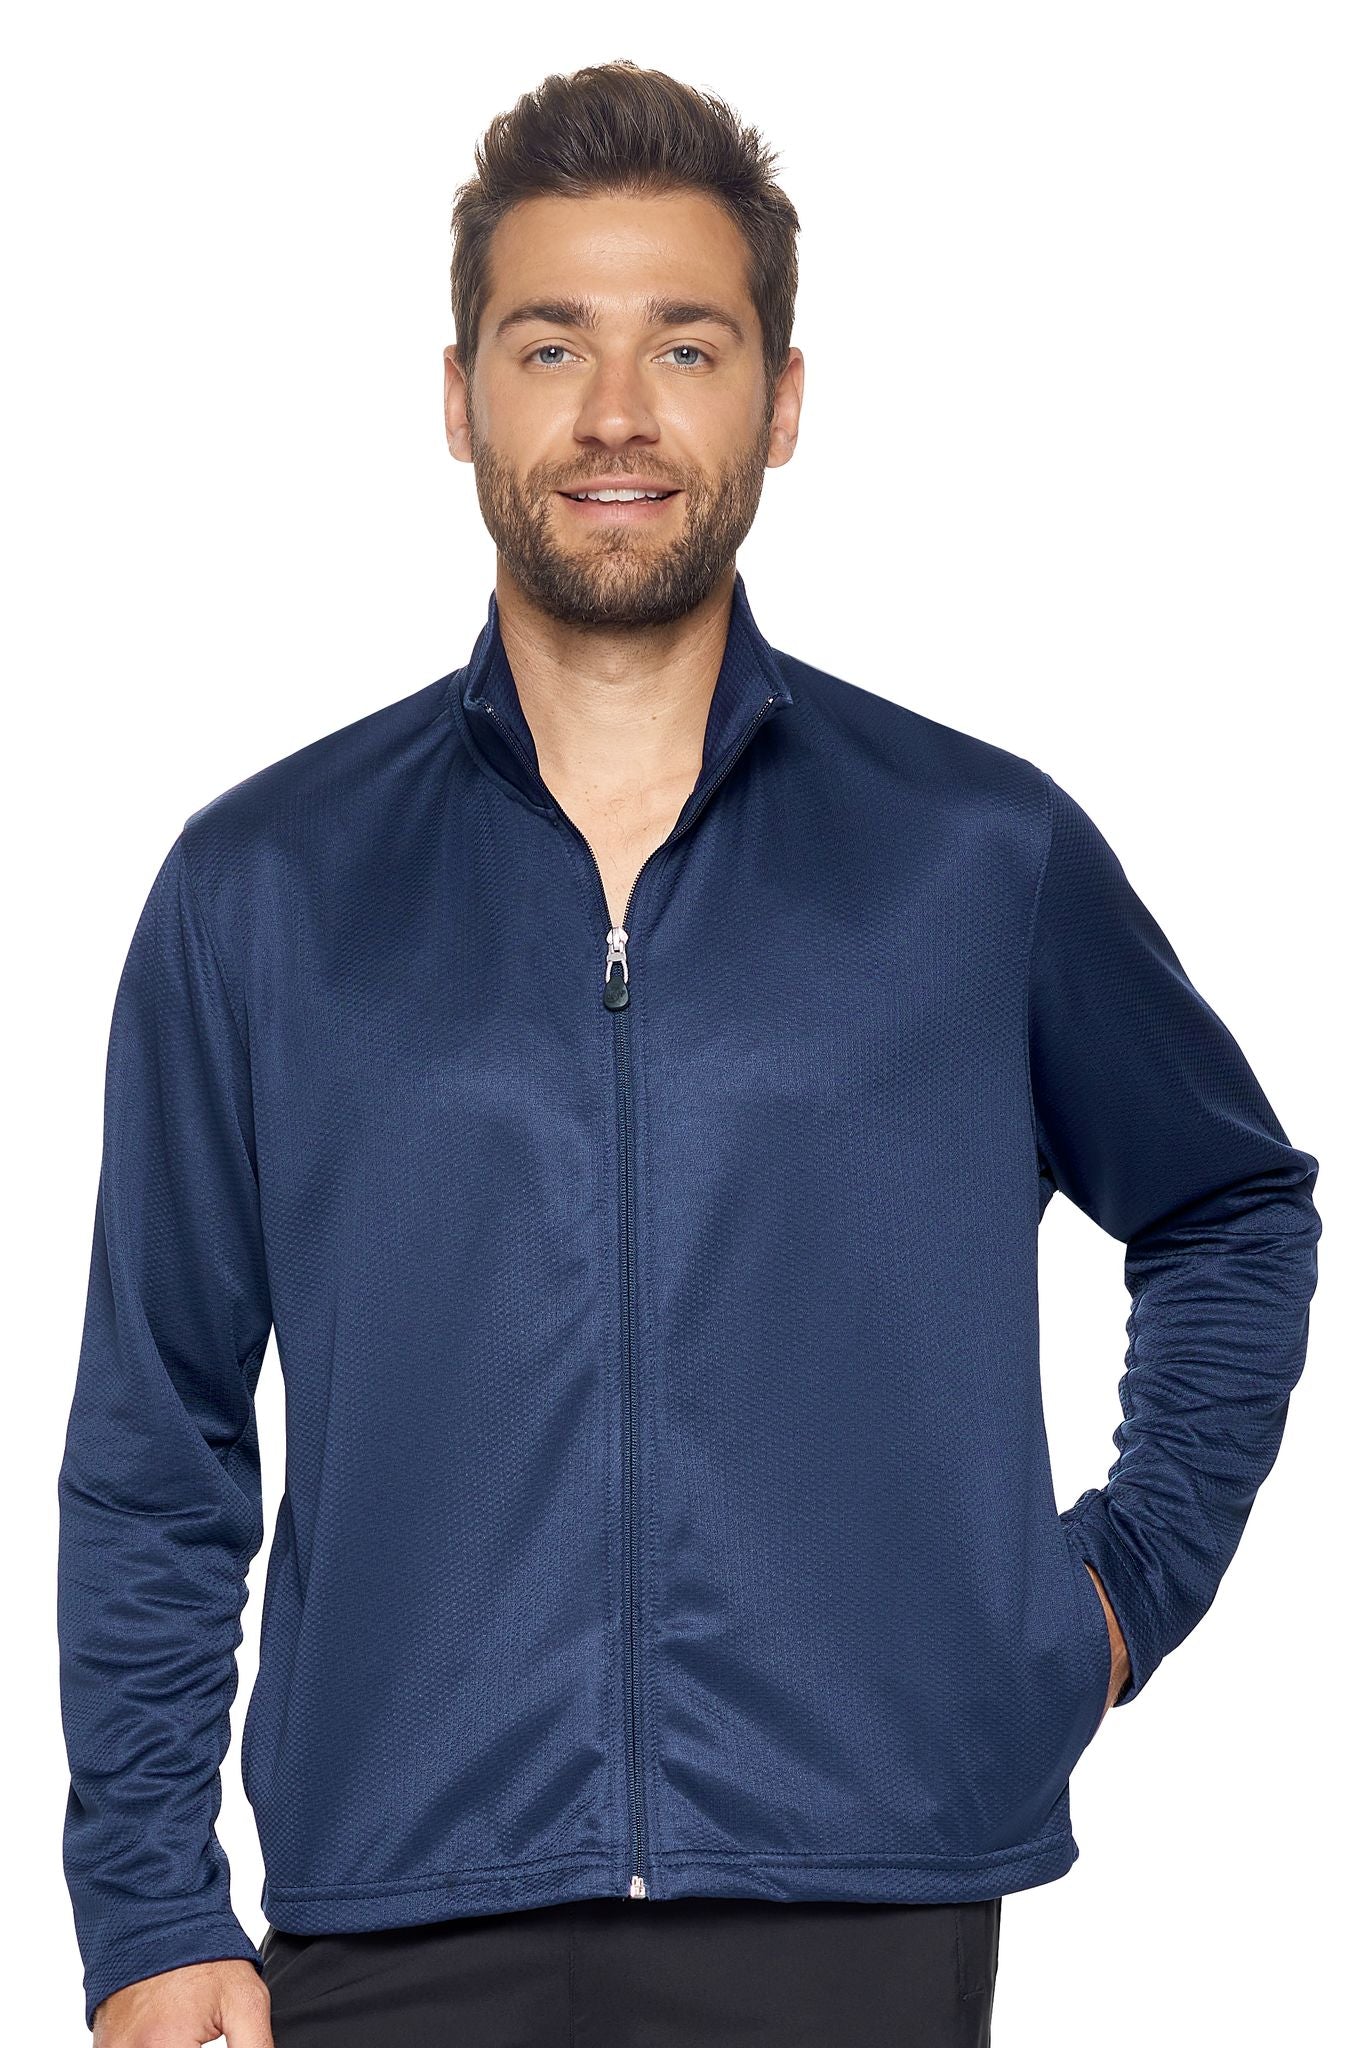 Expert Brand Wholesale Men's Sportsman Jacket in Navy#navy